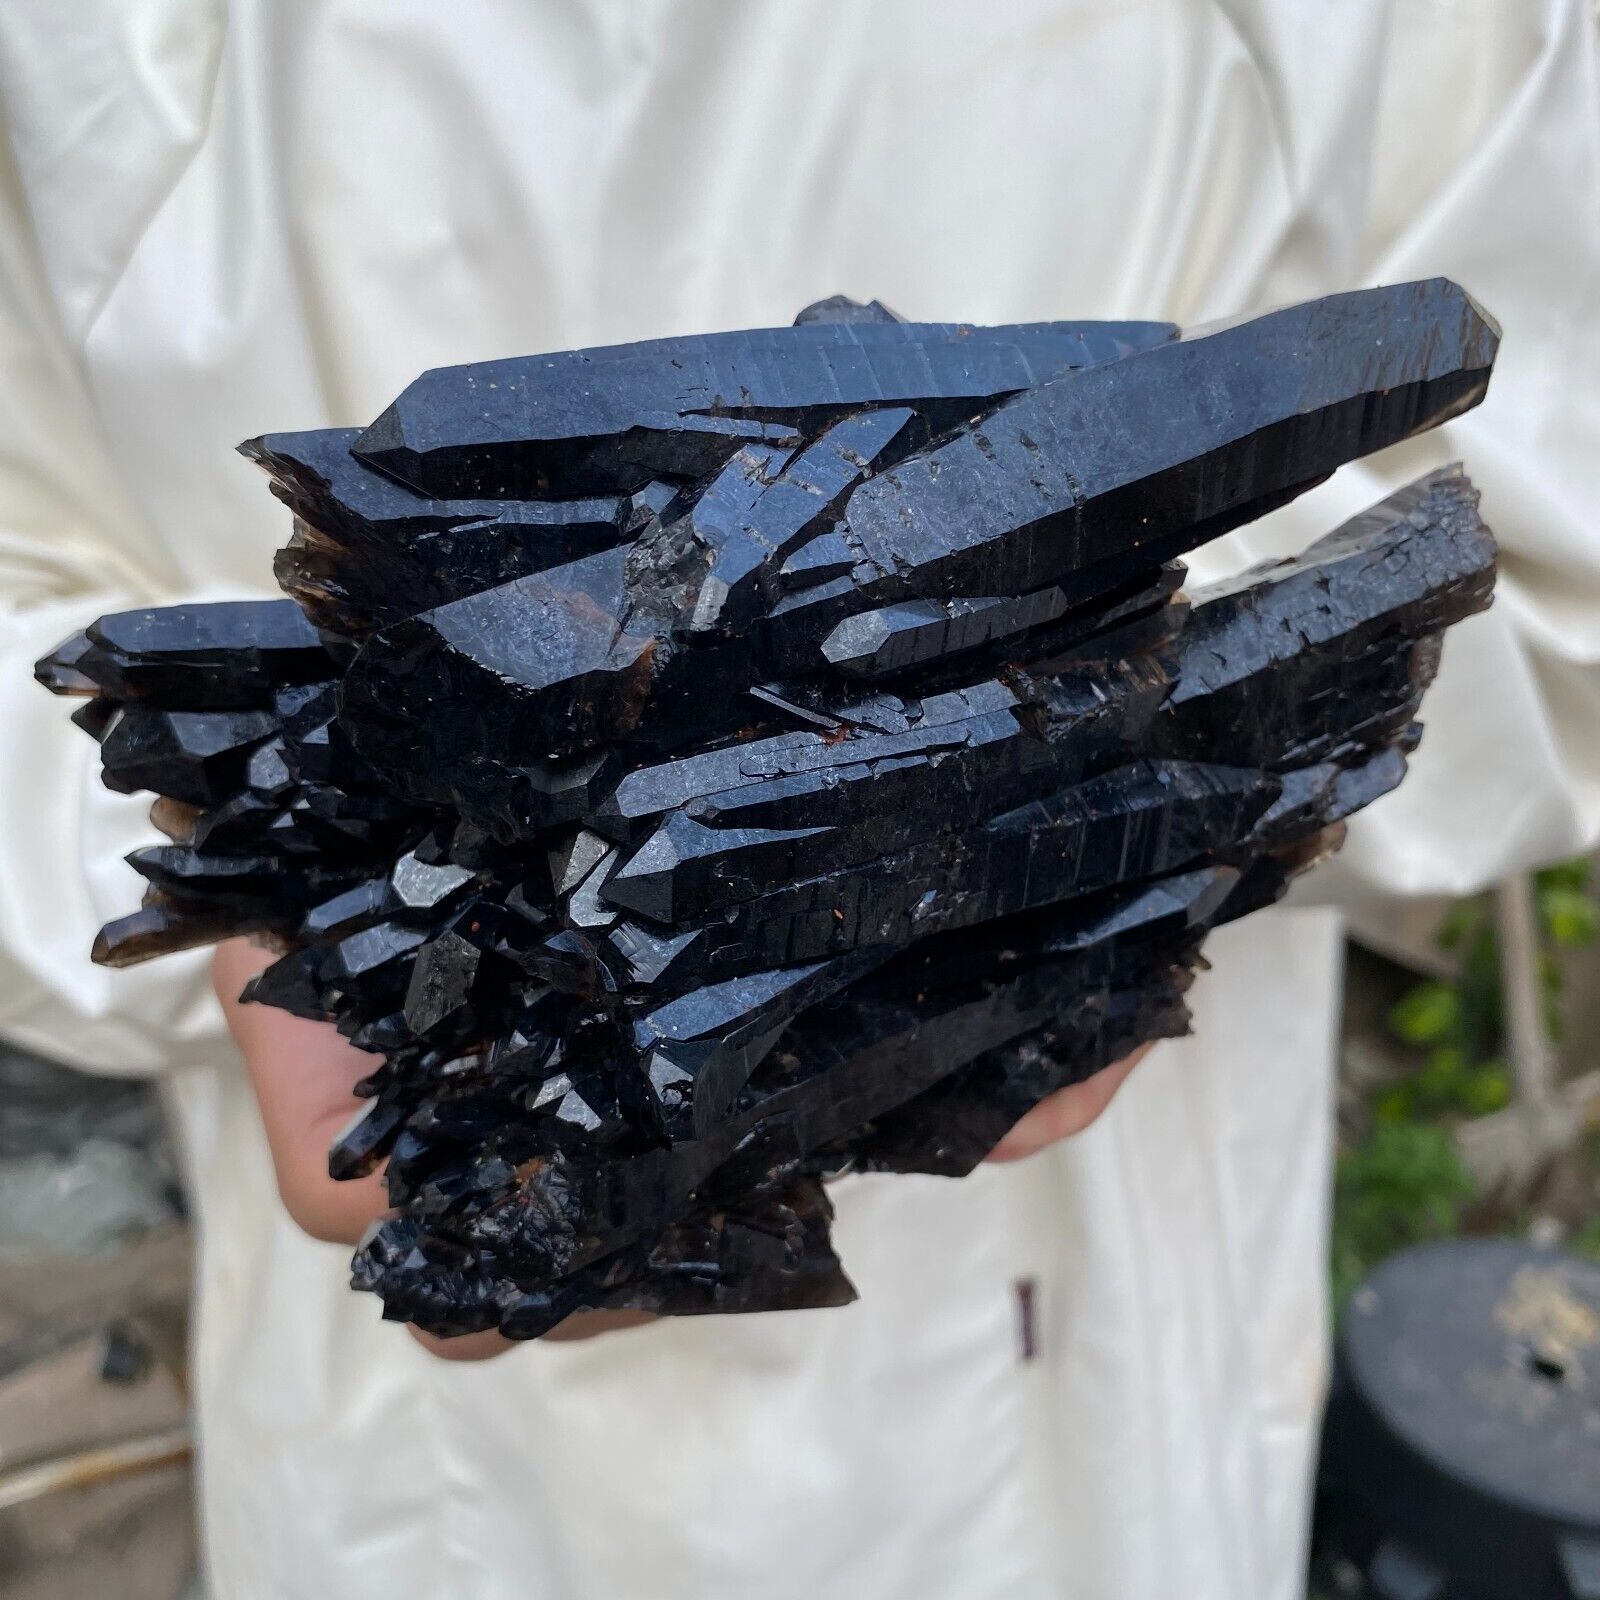 2.7lb Large Natural Black Smoky Quartz Crystal Cluster Rough Mineral Specimen